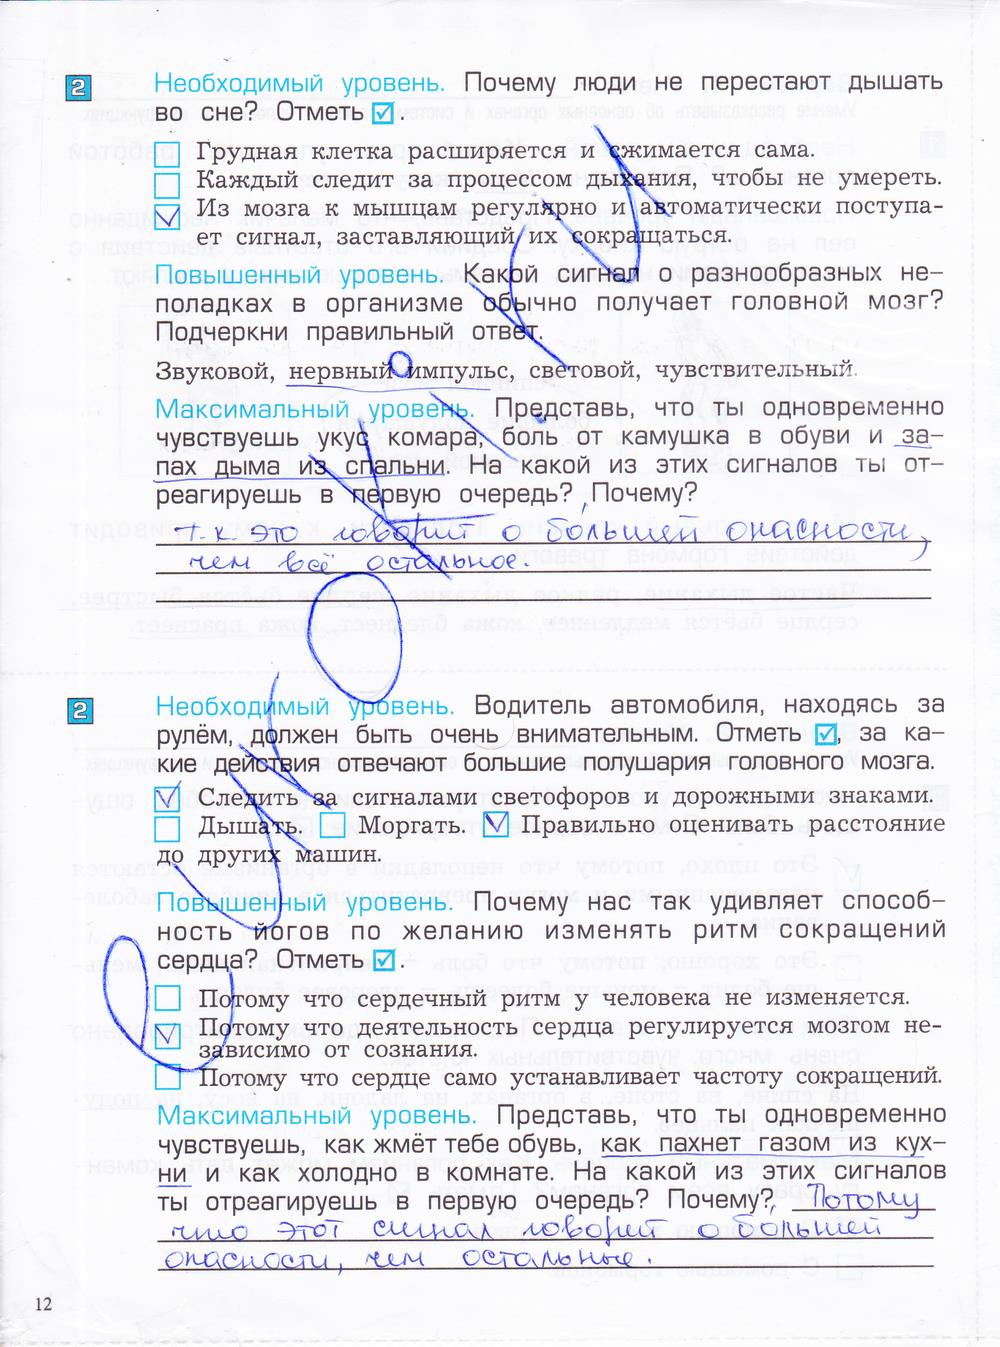 гдз 4 класс проверочные и контрольные работы часть 1 страница 12 окружающий мир Вахрушев, Бурский, Родыгина